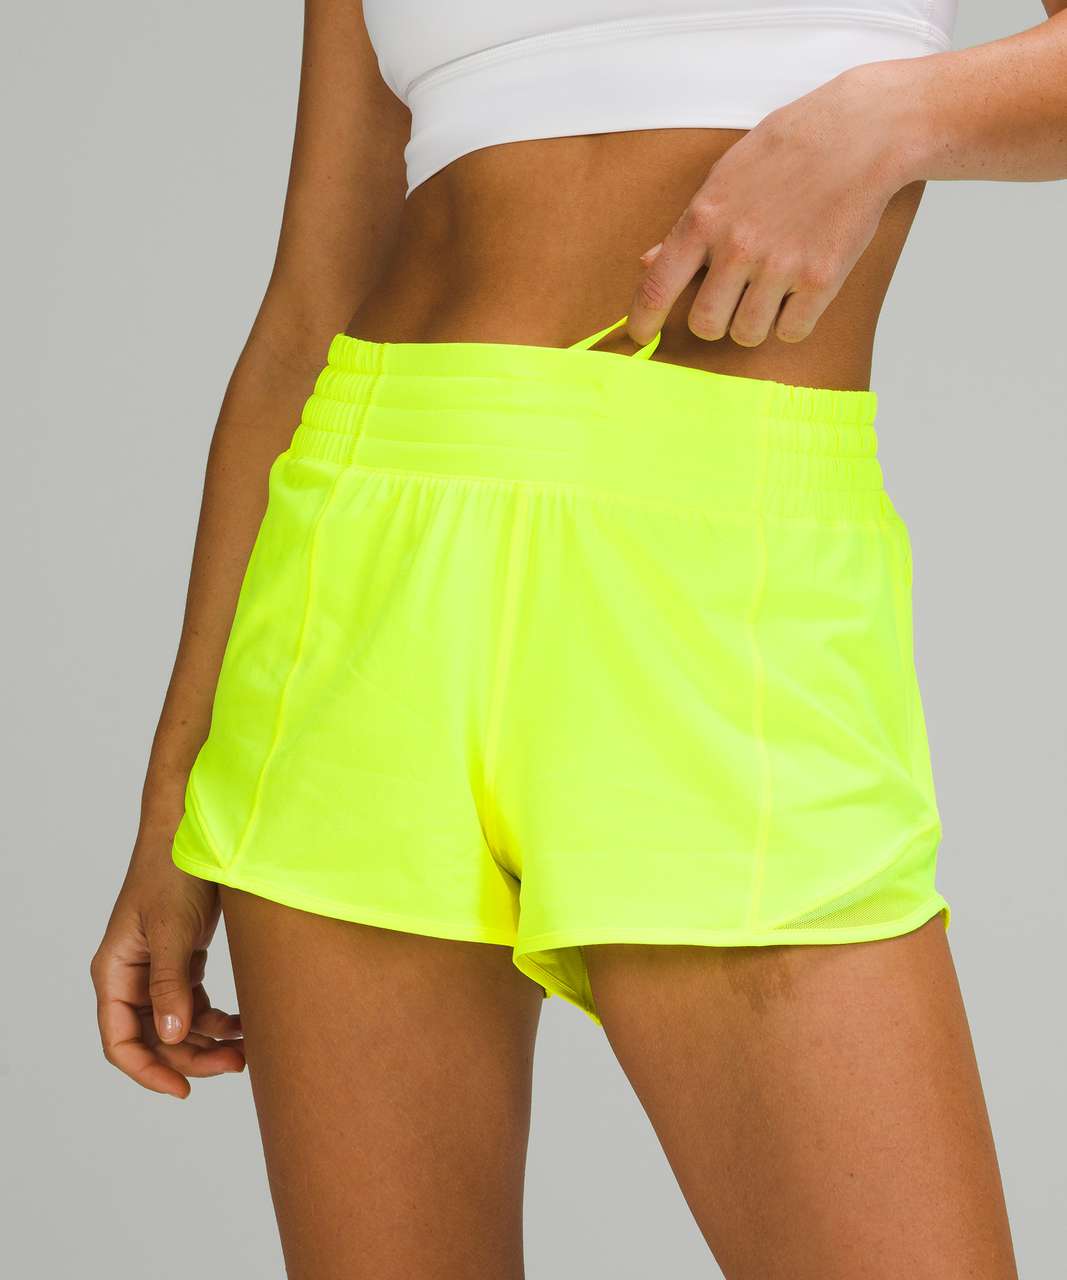 🍋 Lululemon 🍋 Hotty Hot LR Shorts 2.5” Highlight Yellow Size 10